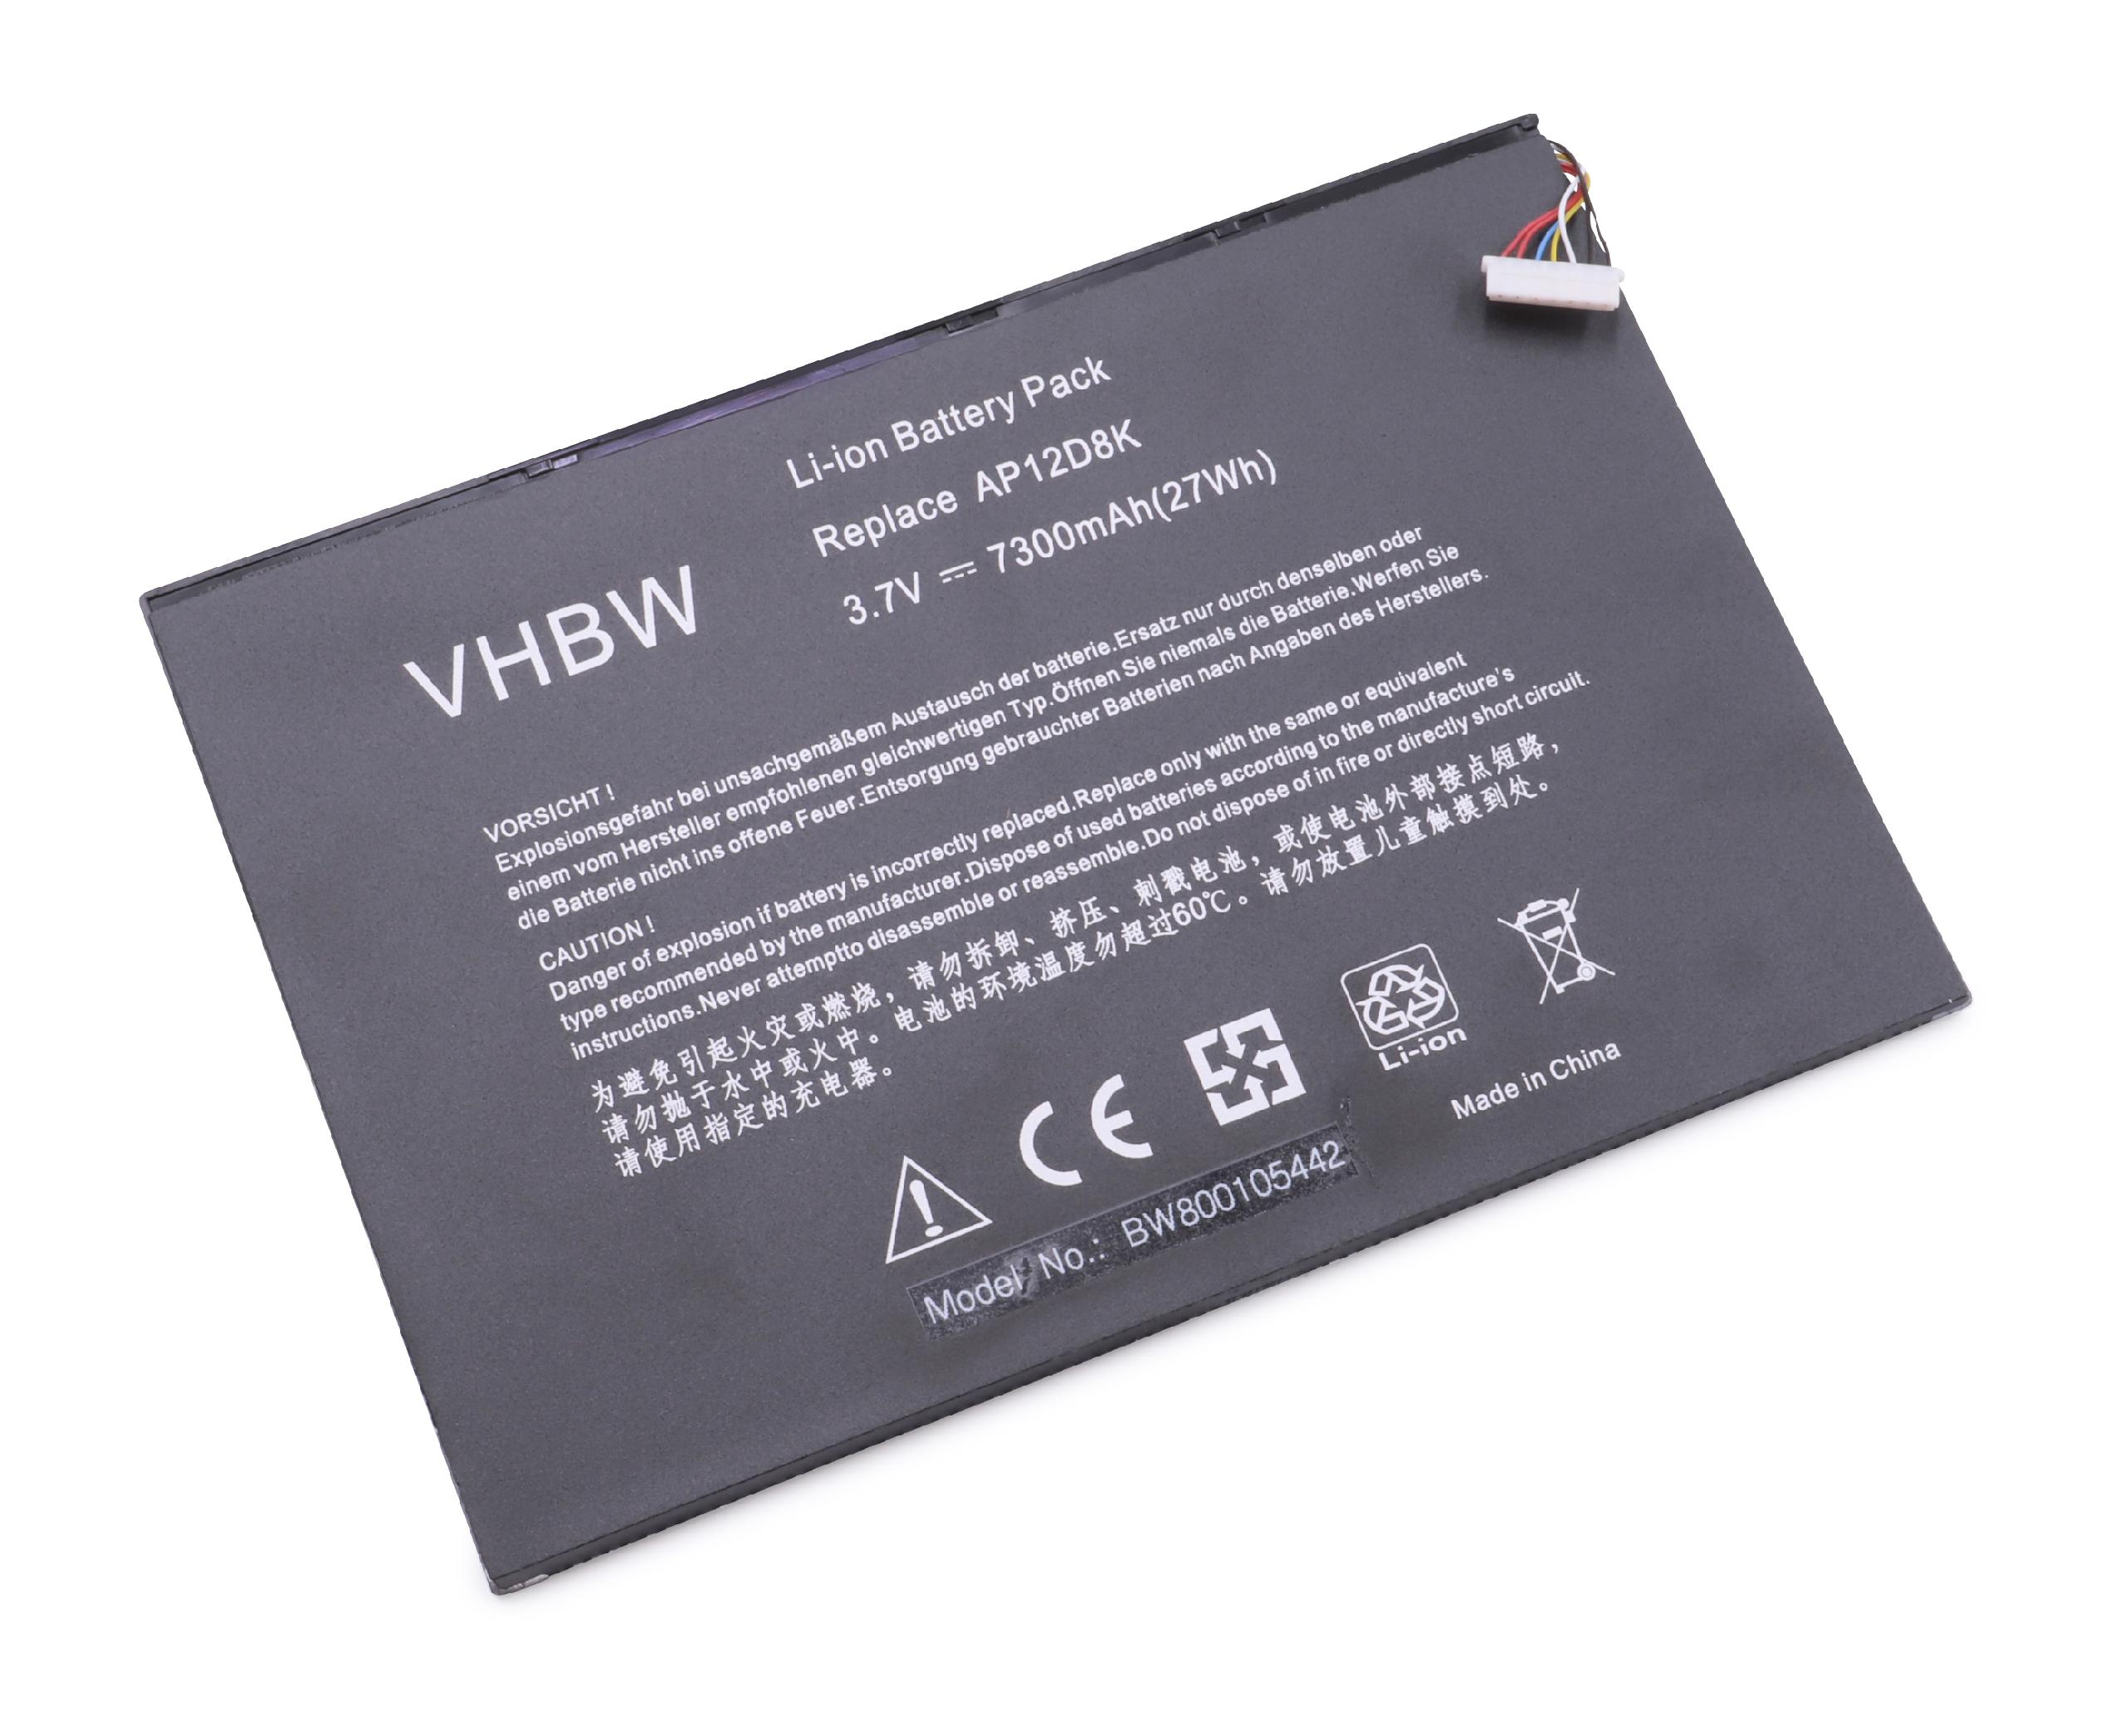 VHBW kompatibel mit Acer Iconia 64GB 7300 W510P, Volt, Tablet, Akku Li-Polymer W510 - Tab W510P-1406, W510P-1867, 3.7